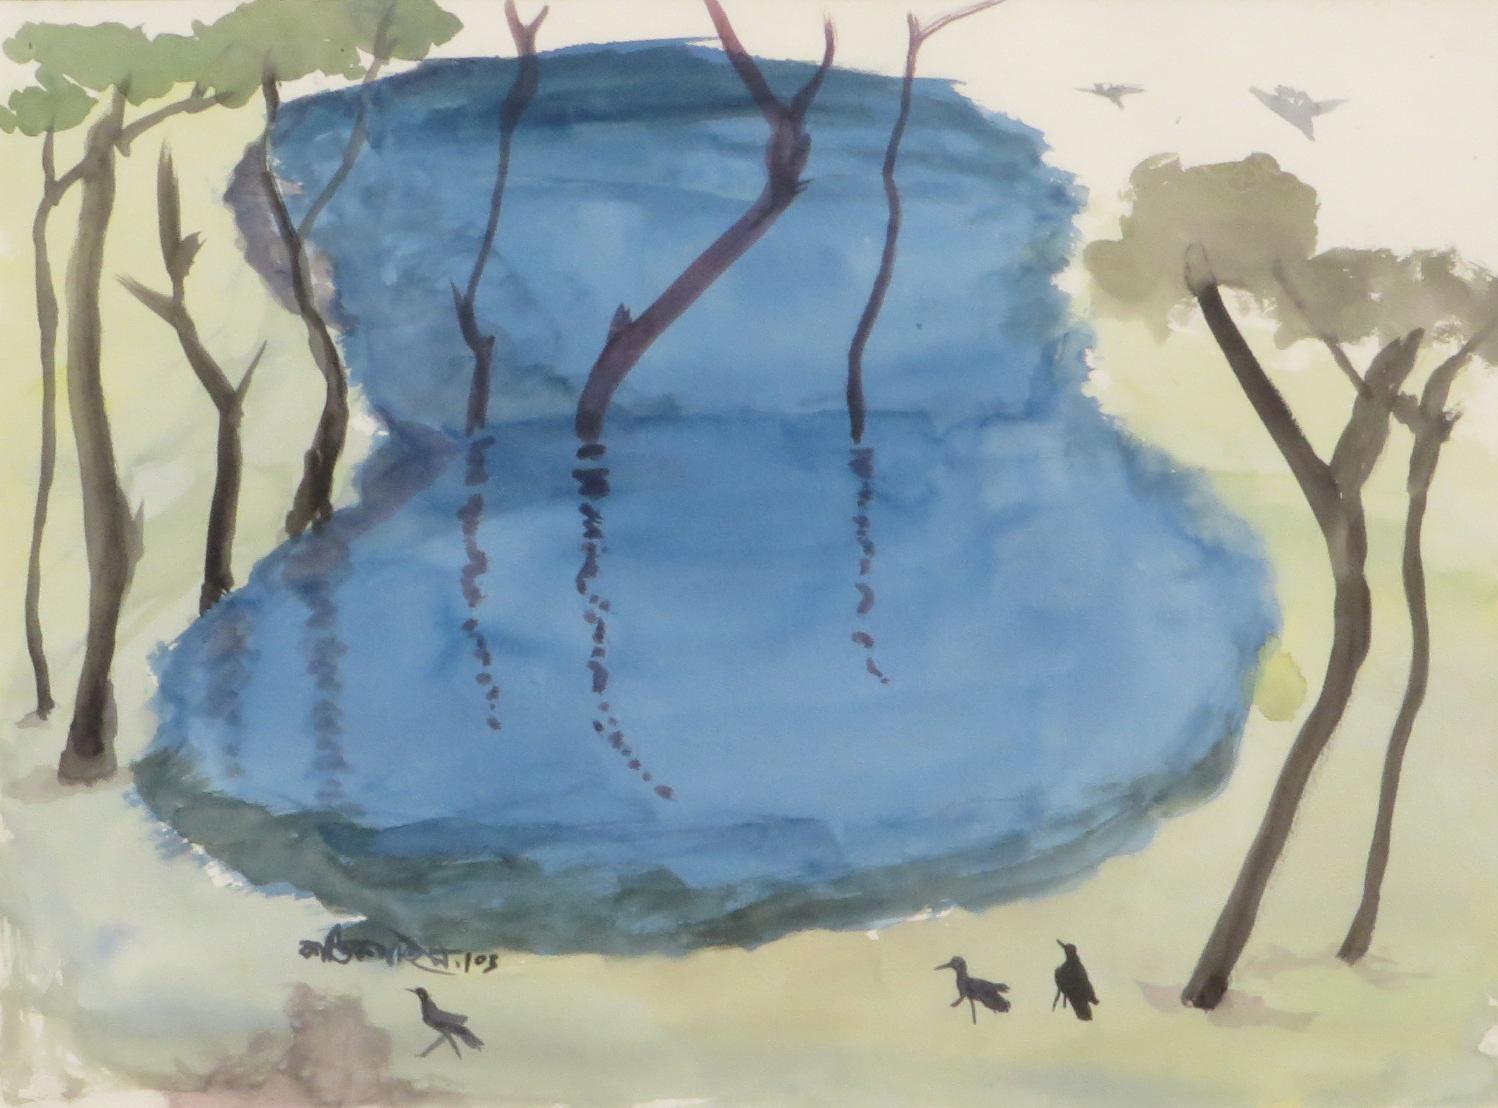 Landschaft, Bäume, Teich, Aquarell auf Papier, Blau, Grün, Braun Farben, „Auf Lager“ – Painting von Kartick Chandra Pyne